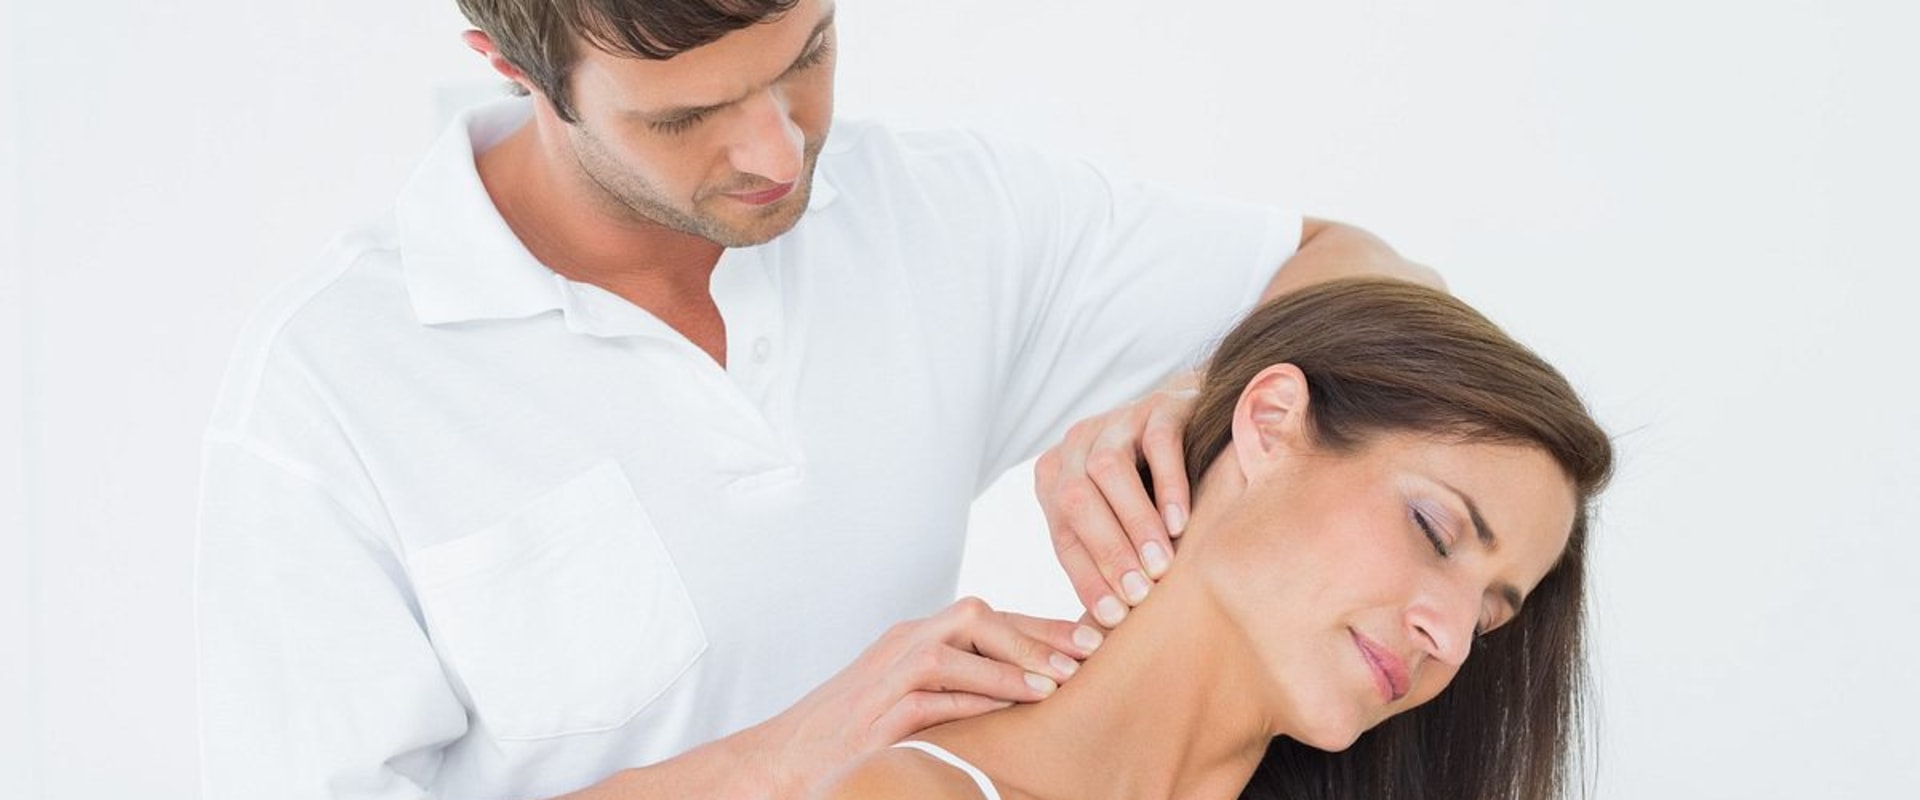 What Massage is Best for Stiff Neck?